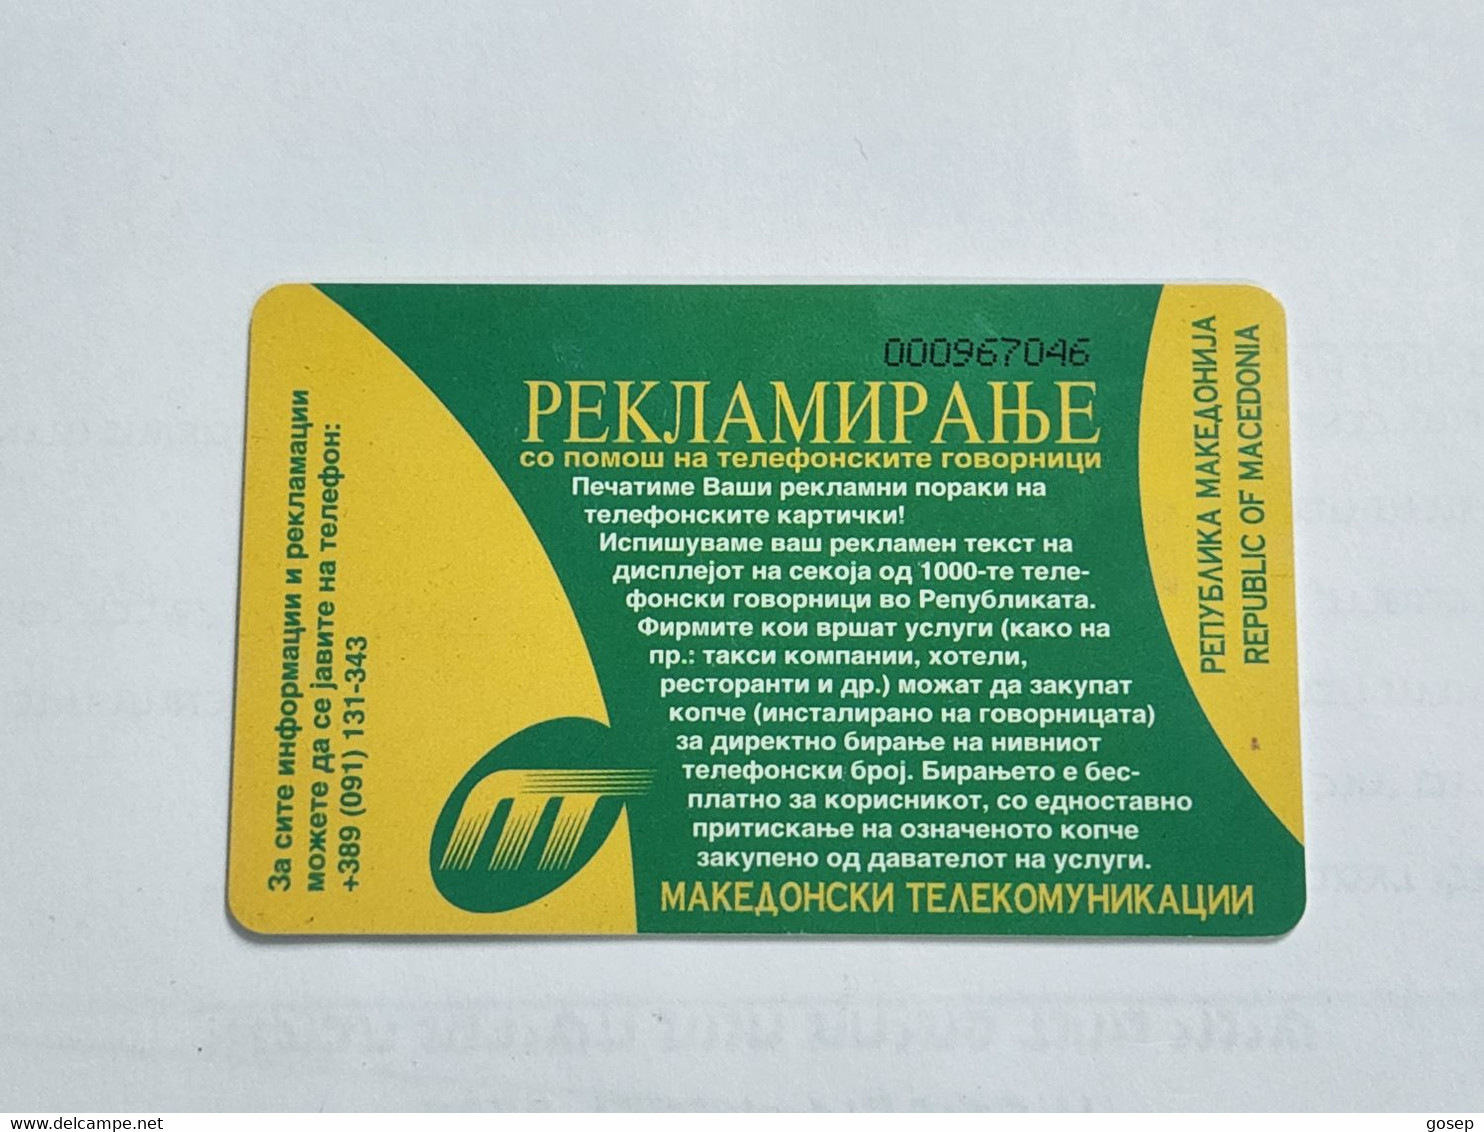 Macedonia-(MK-MAT-0013B)-Coining-(14)-(12/99)-(500units)-(000967046)-tirage-100.000+1card Prepiad Free - North Macedonia